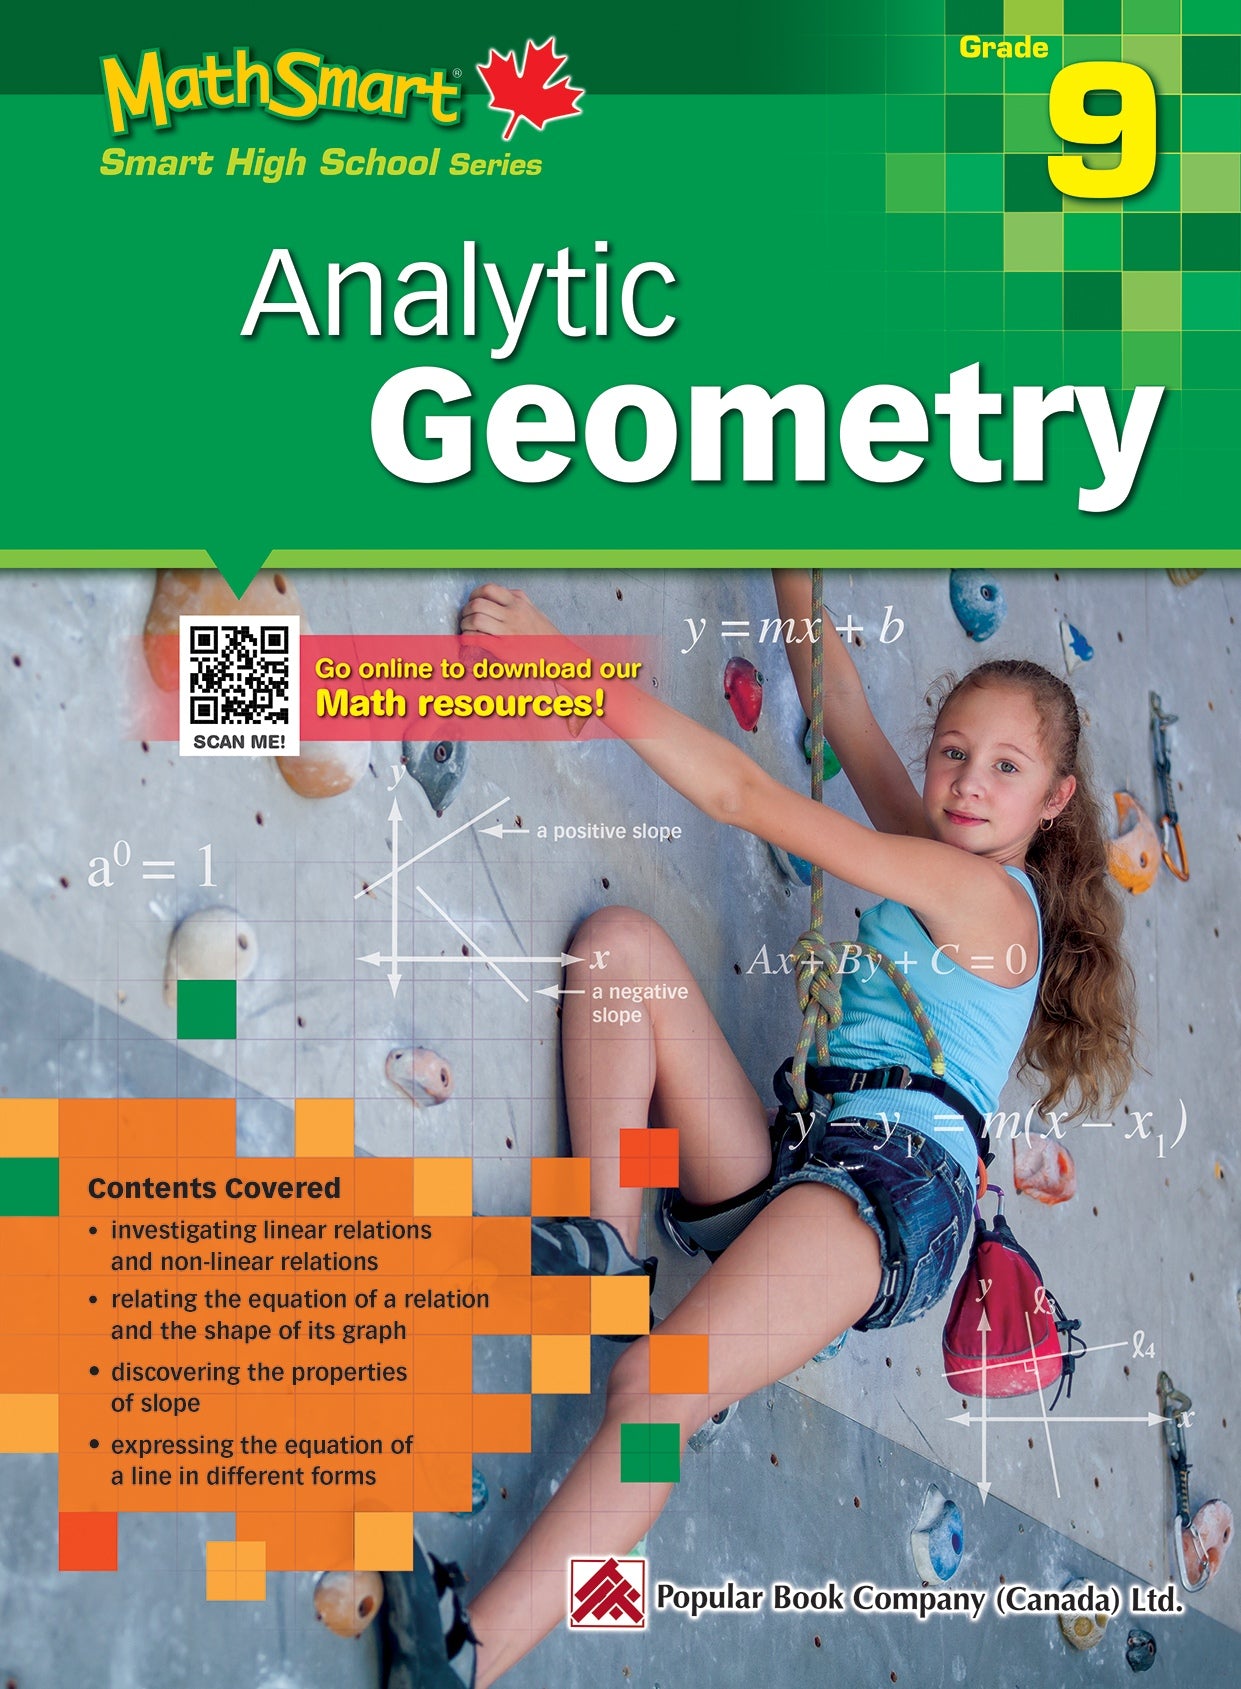 MathSmart Analytic Geometry Grade 9